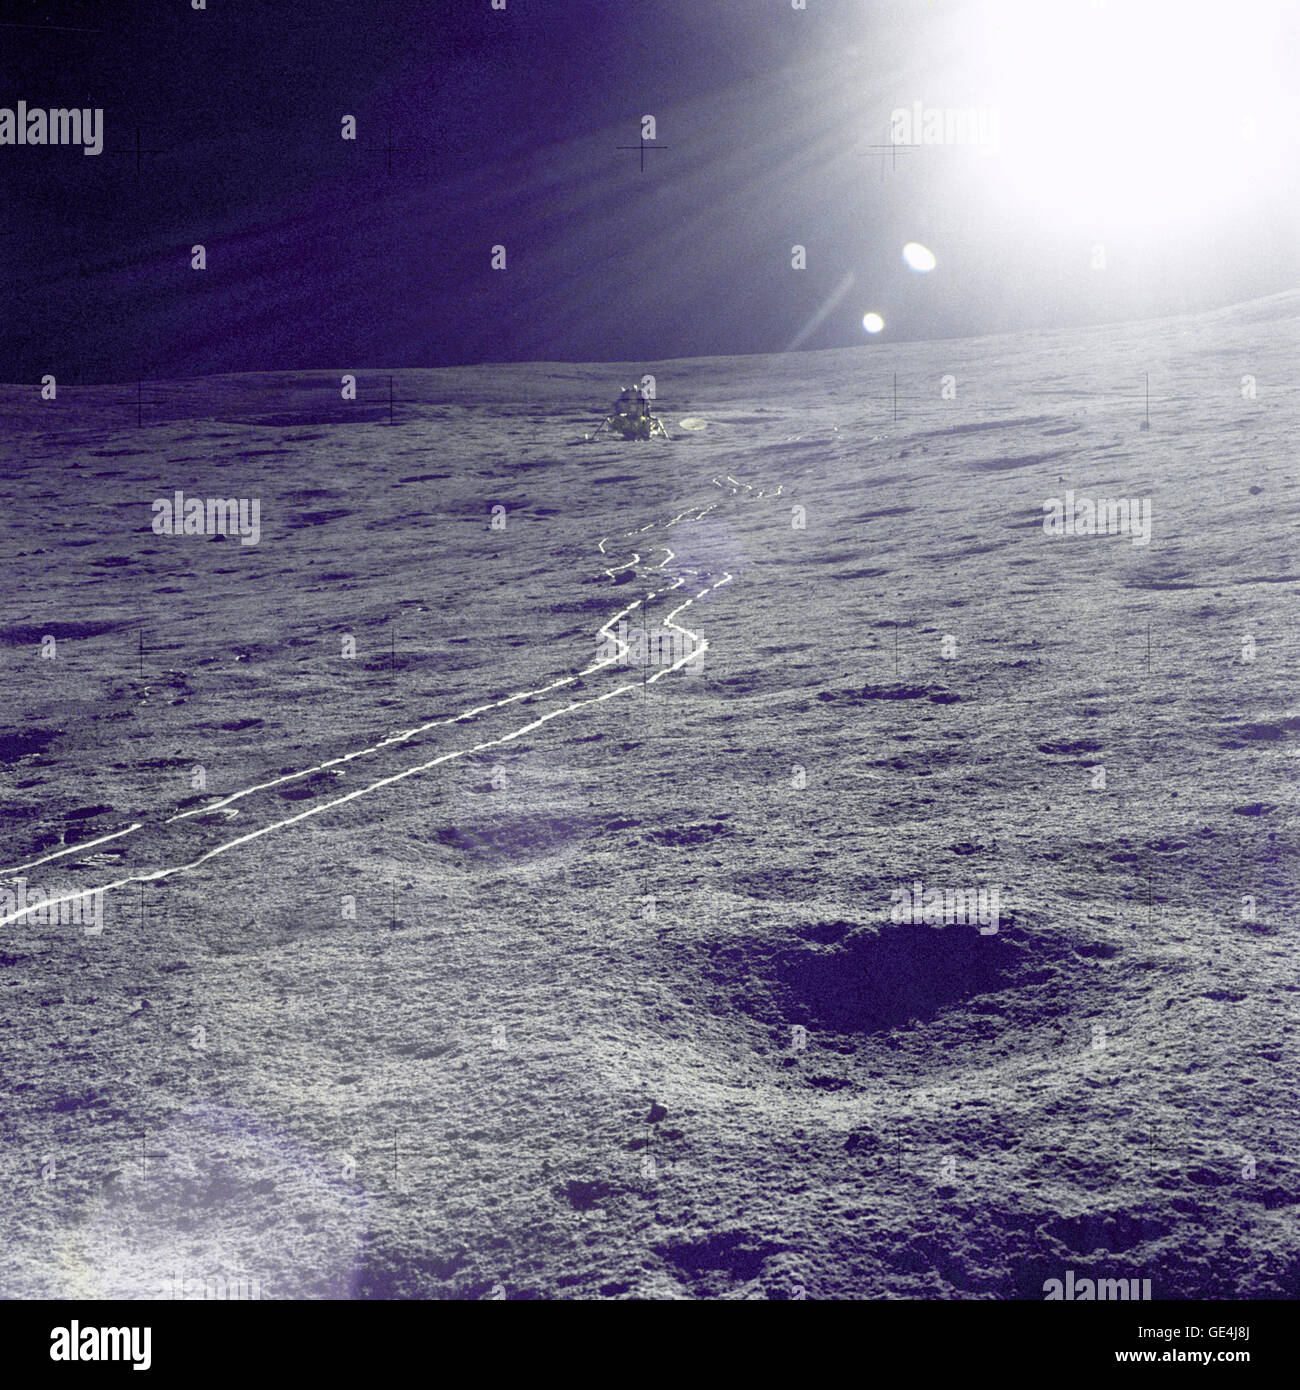 Der Apollo 14 Mondmodul (LM) "Antares" wird gegen eine strahlende Sonne Blendung während der ersten Extravehicular Activity (EVA-1) fotografiert. Eine helle Spur im lunar Boden durch die Zweirad-modularisierte Equipment Transporter (MET) führt von der LM.  Bild-Nr.: AS14-67-9367 Stockfoto